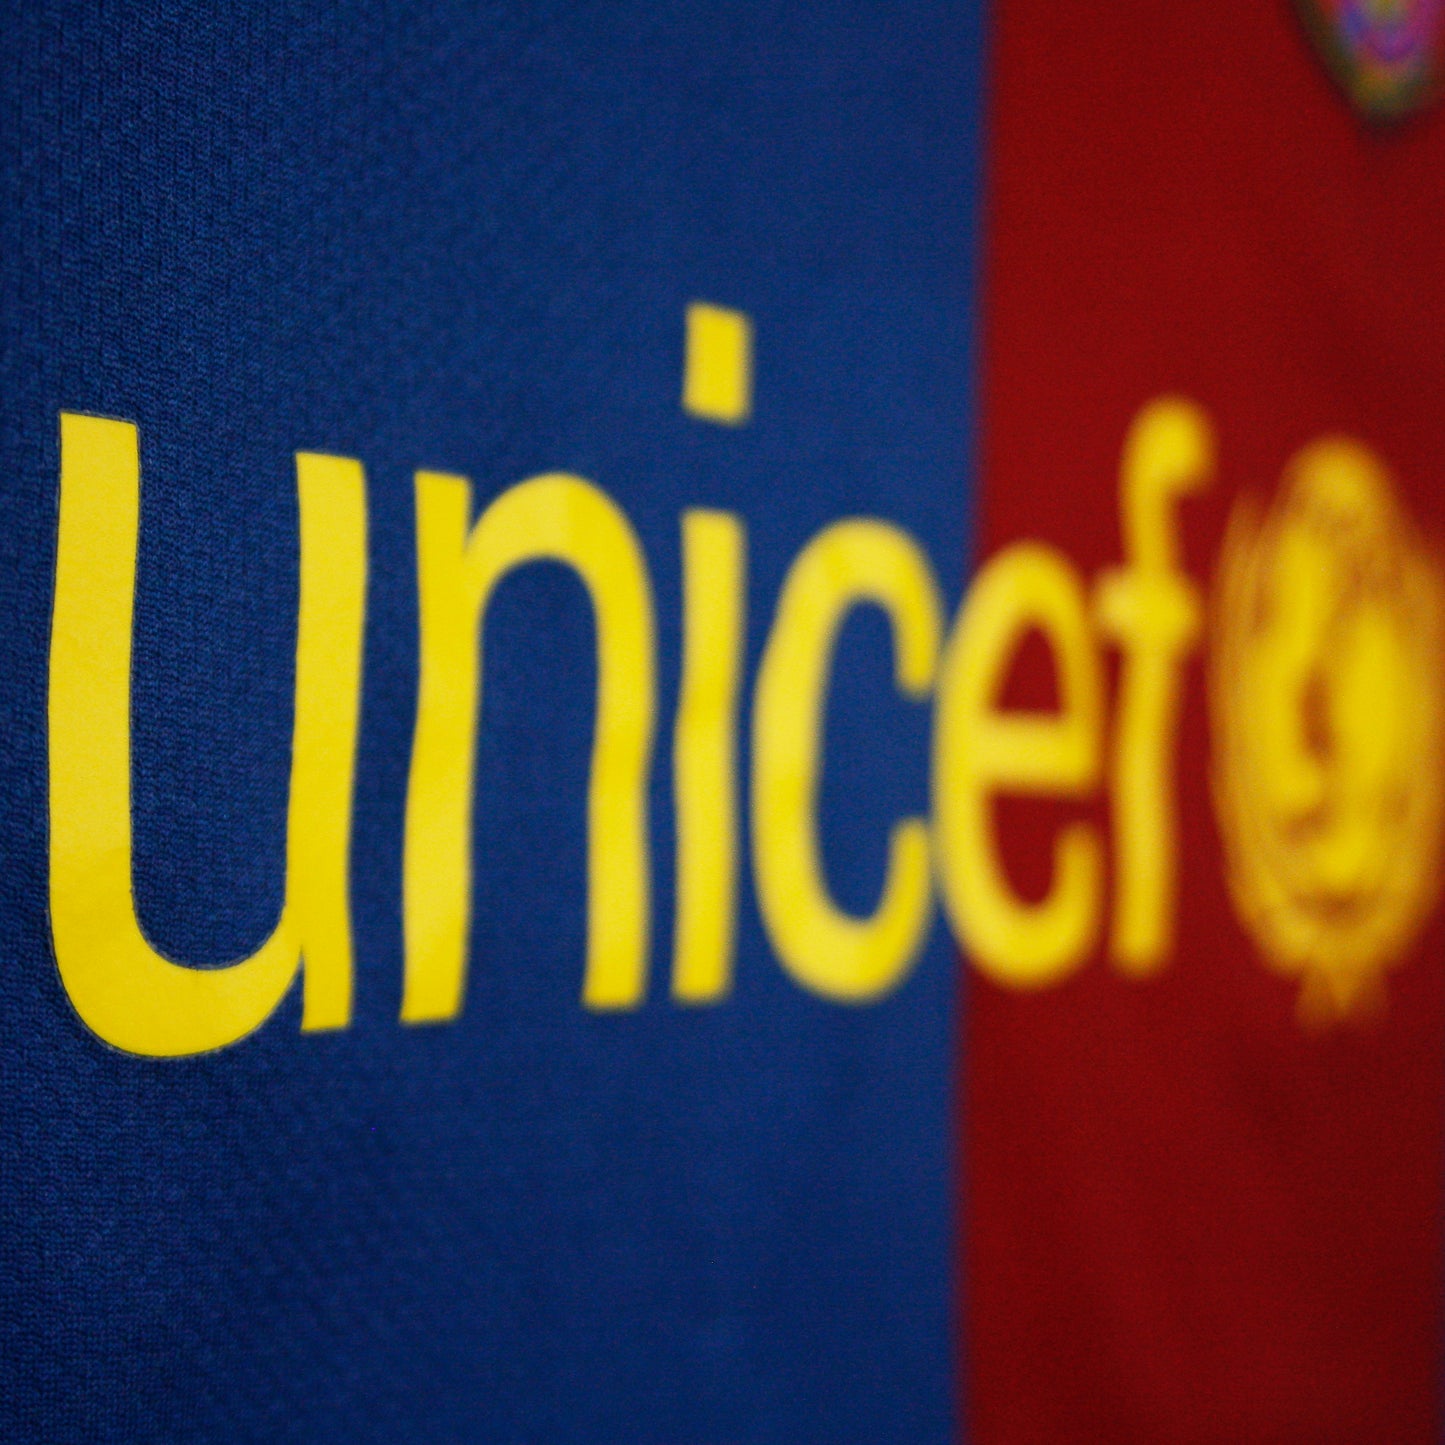 Barcelona 06/07 • Camiseta Local • L • Messi #19